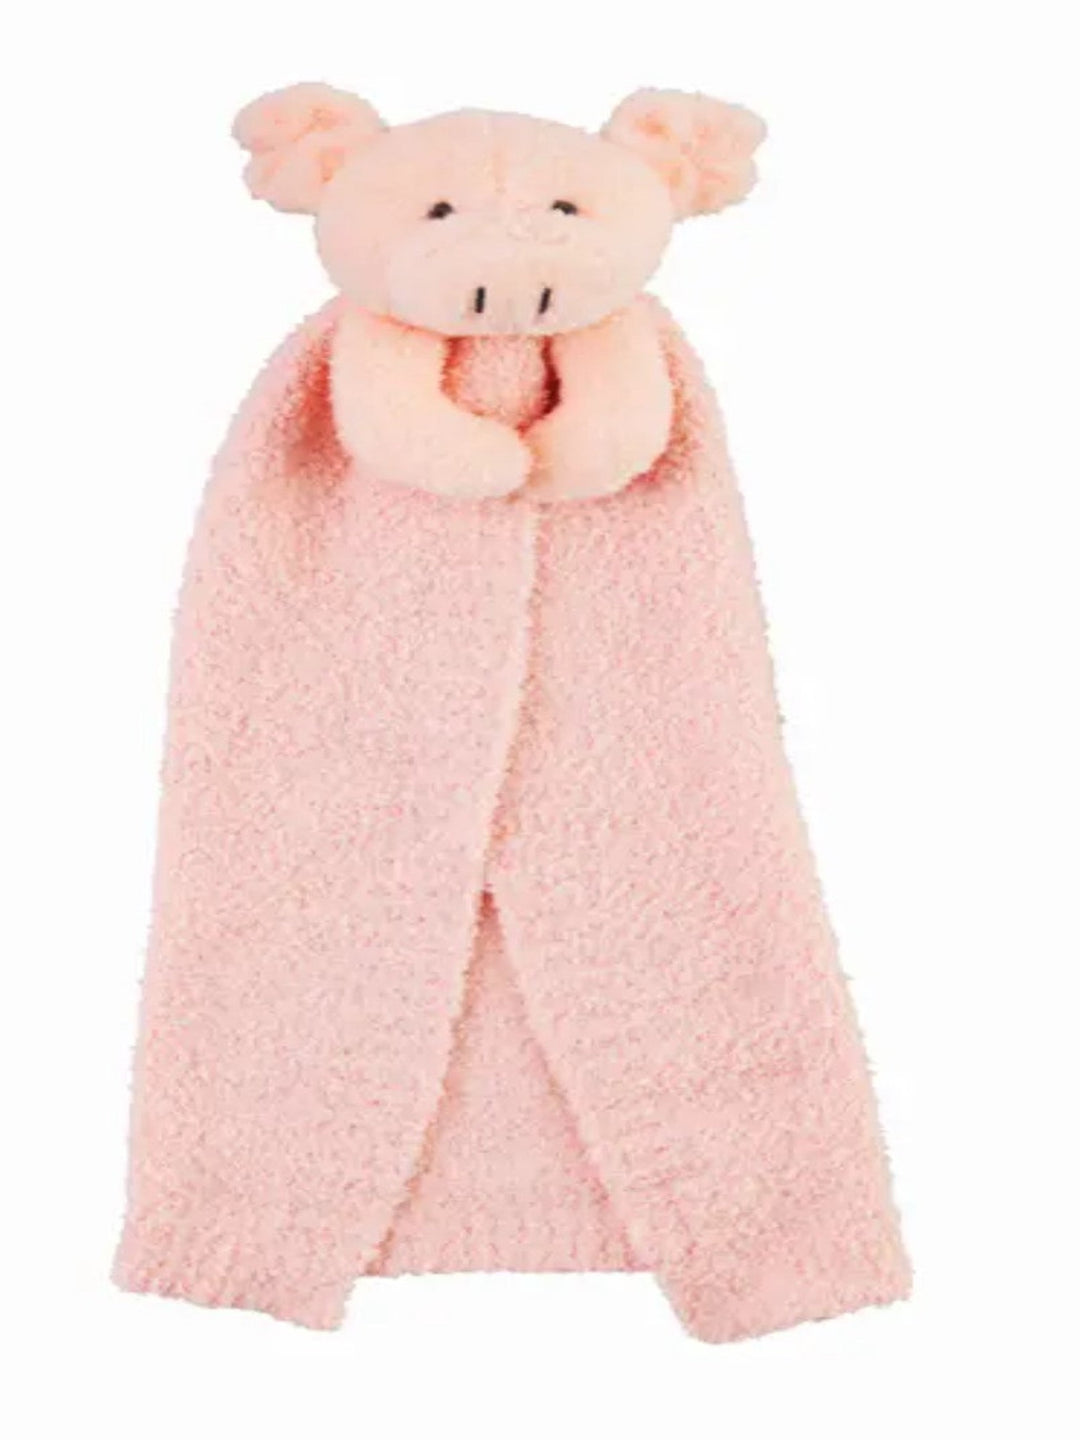 Chenille Lovey Blanket, Pig